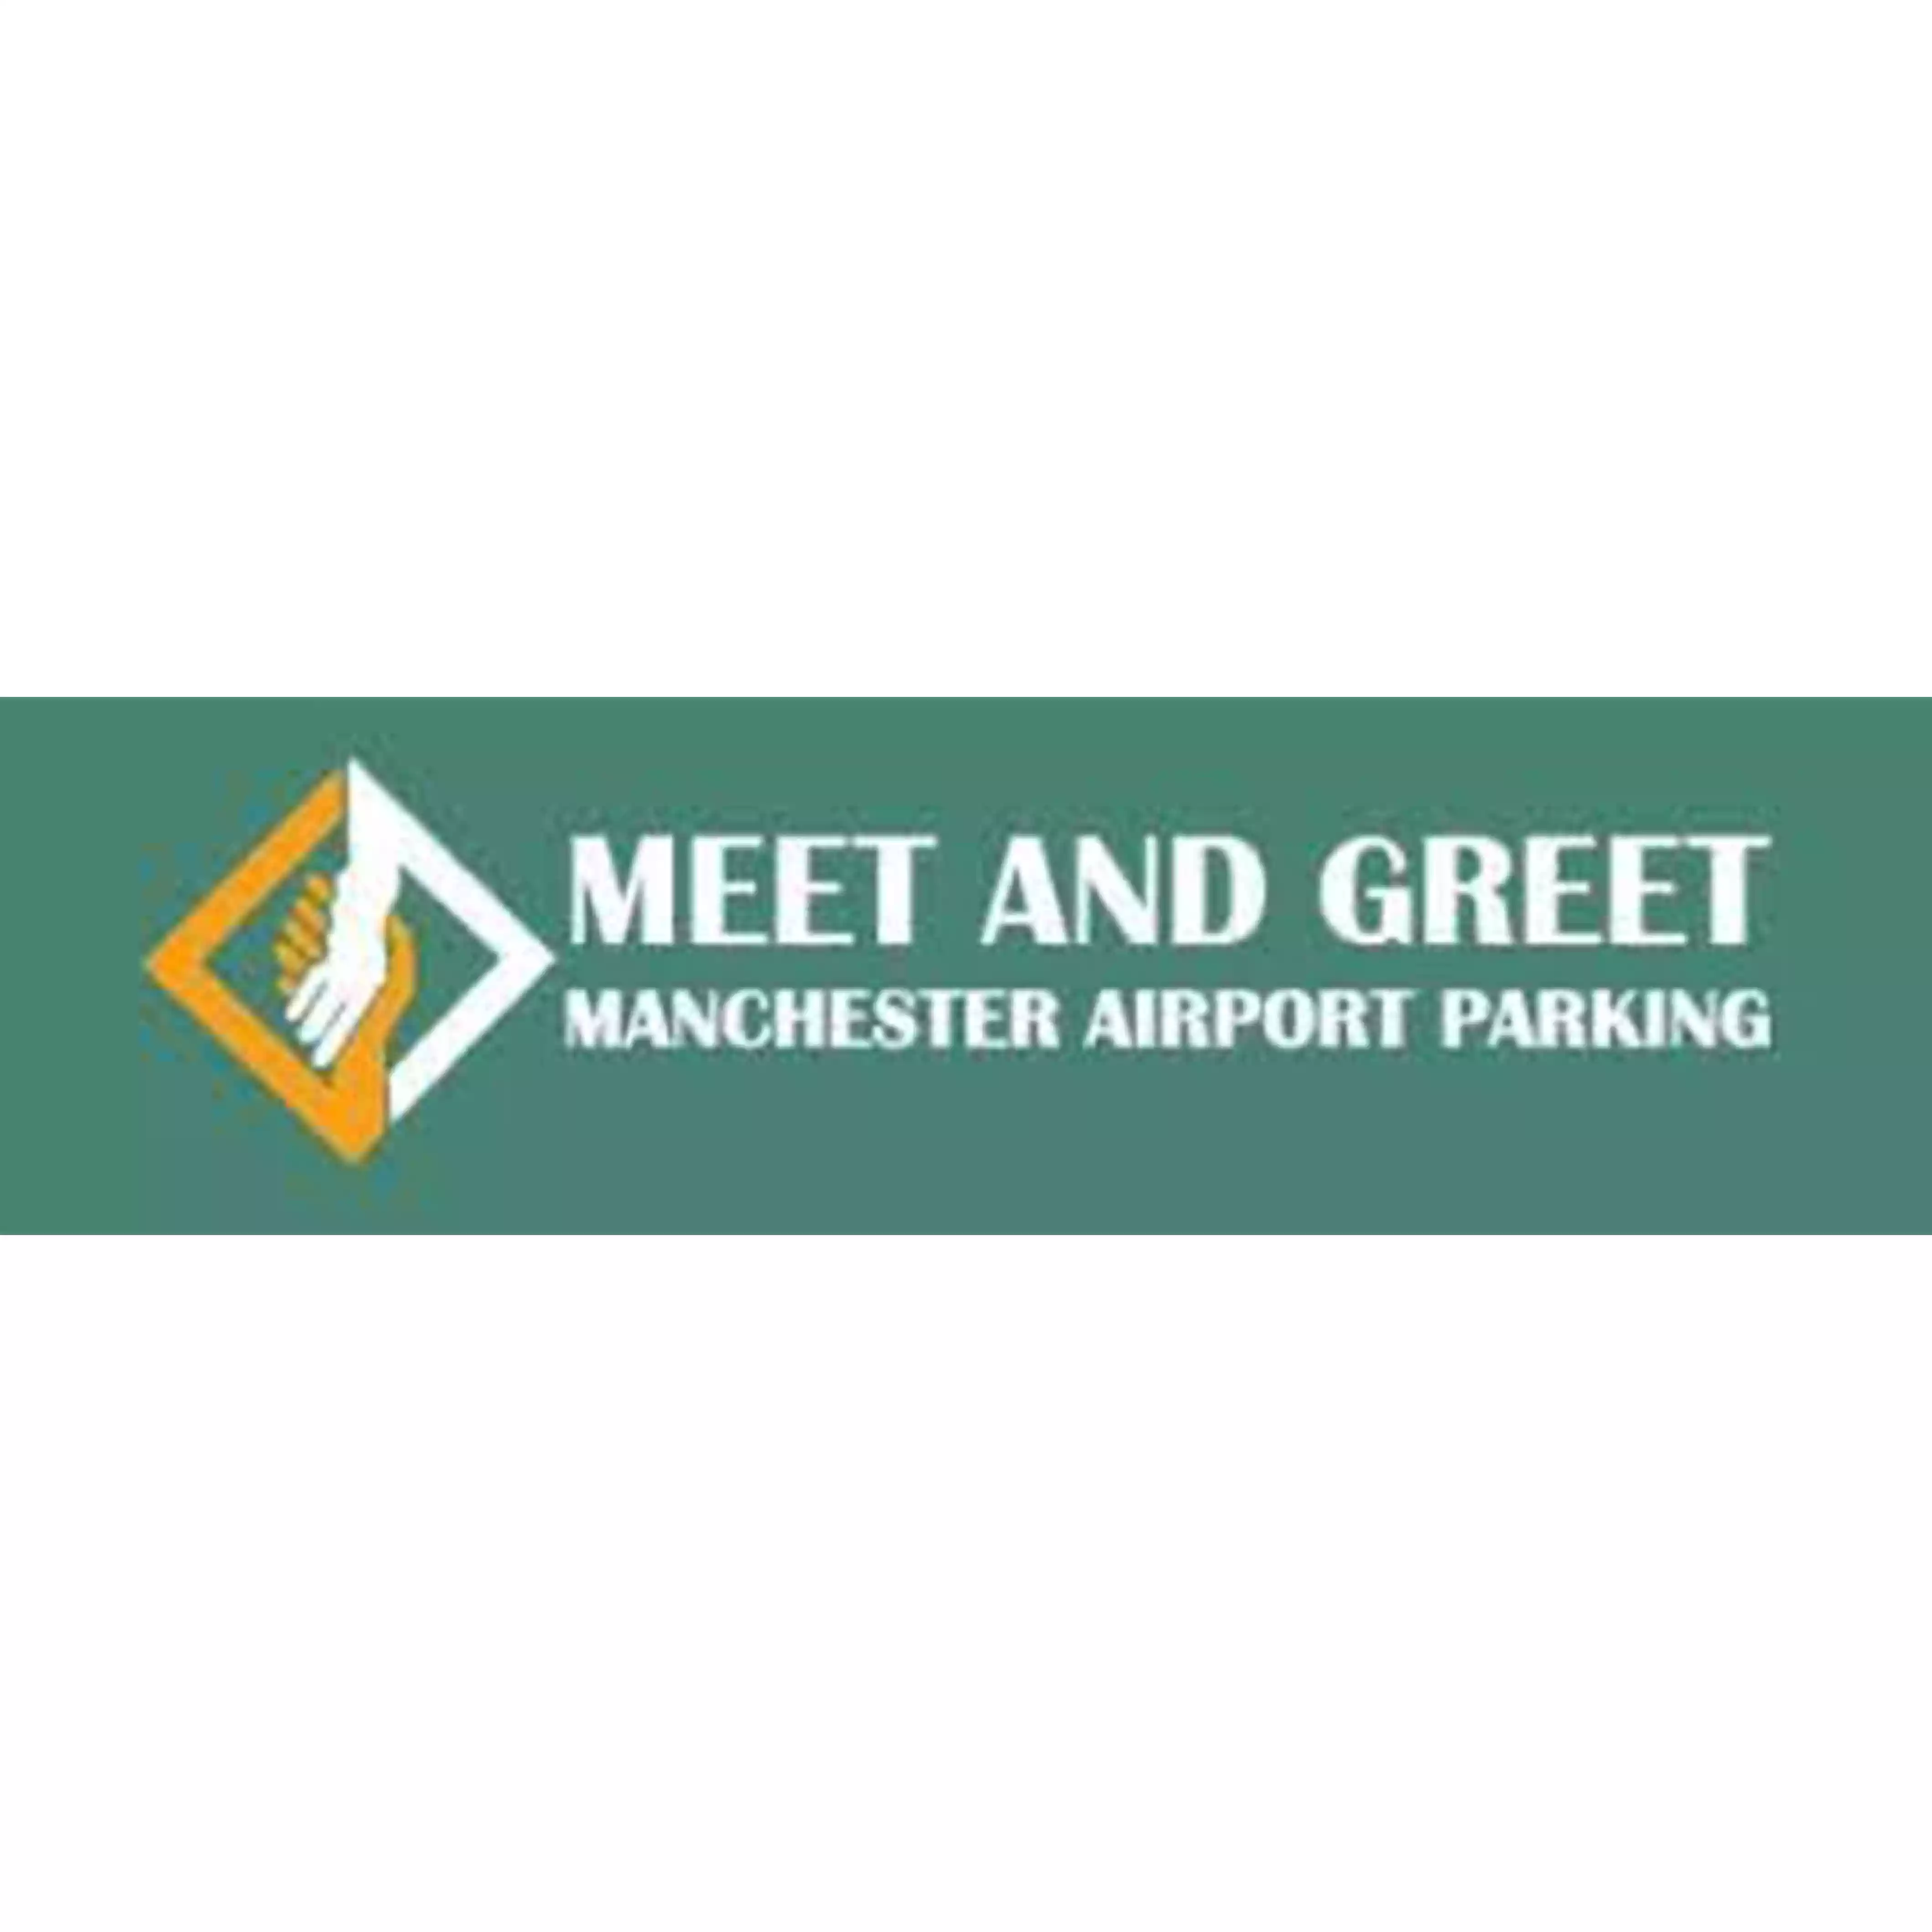 Meet And Greet Manchester Airport Parking logo